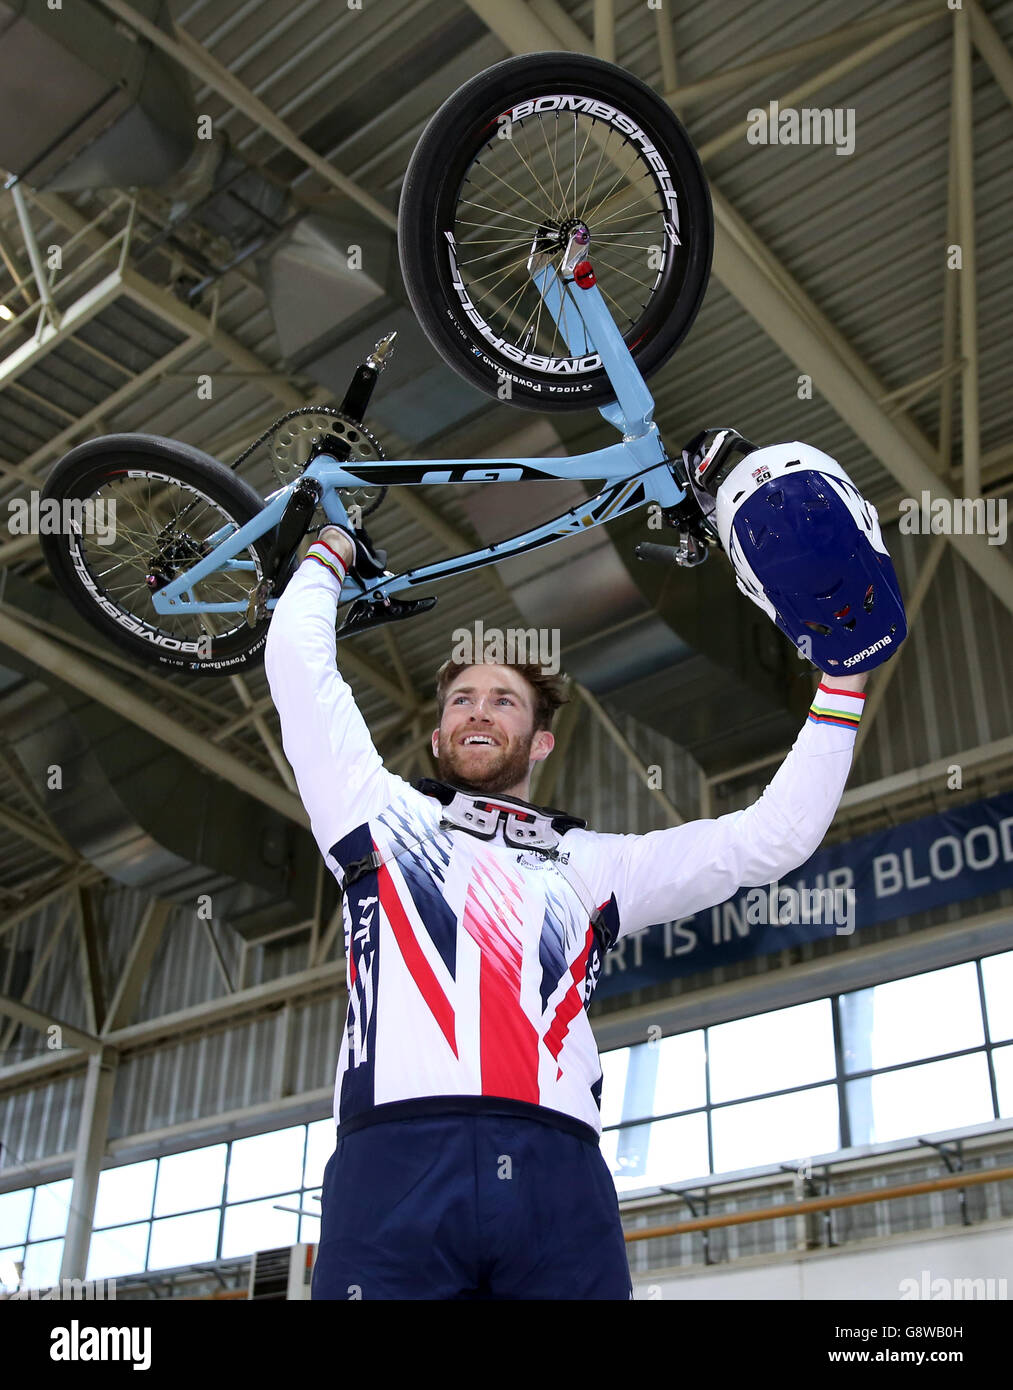 Der britische Liam Phillips feiert, nachdem er am zweiten Tag des zweiten Rundes des UCI BMX Supercross World Cup im National Cycling Centre in Manchester das Herrenfinale gewonnen hat. Stockfoto